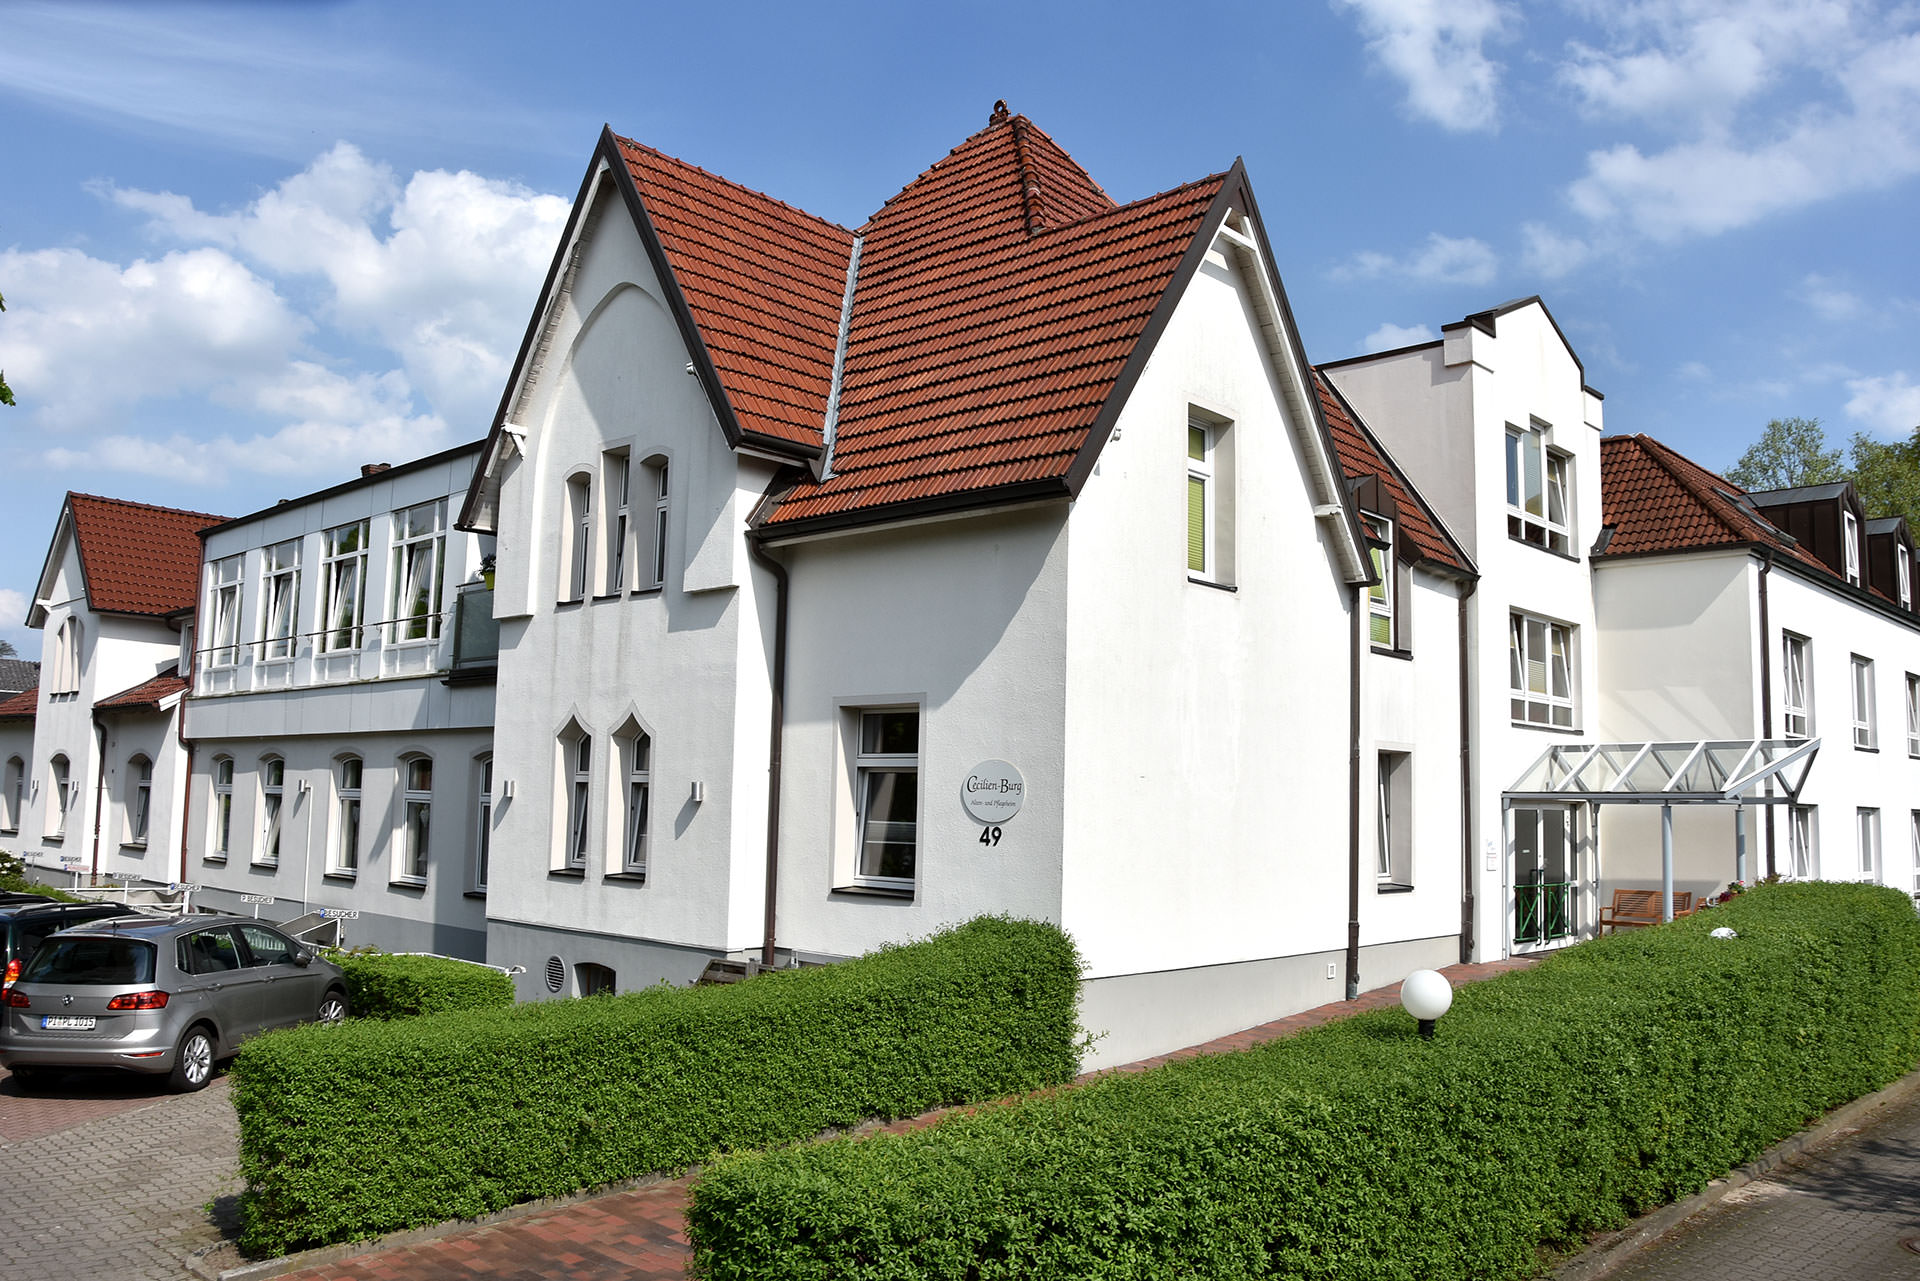 Haus “Uetersener Strasse” in Tornesch